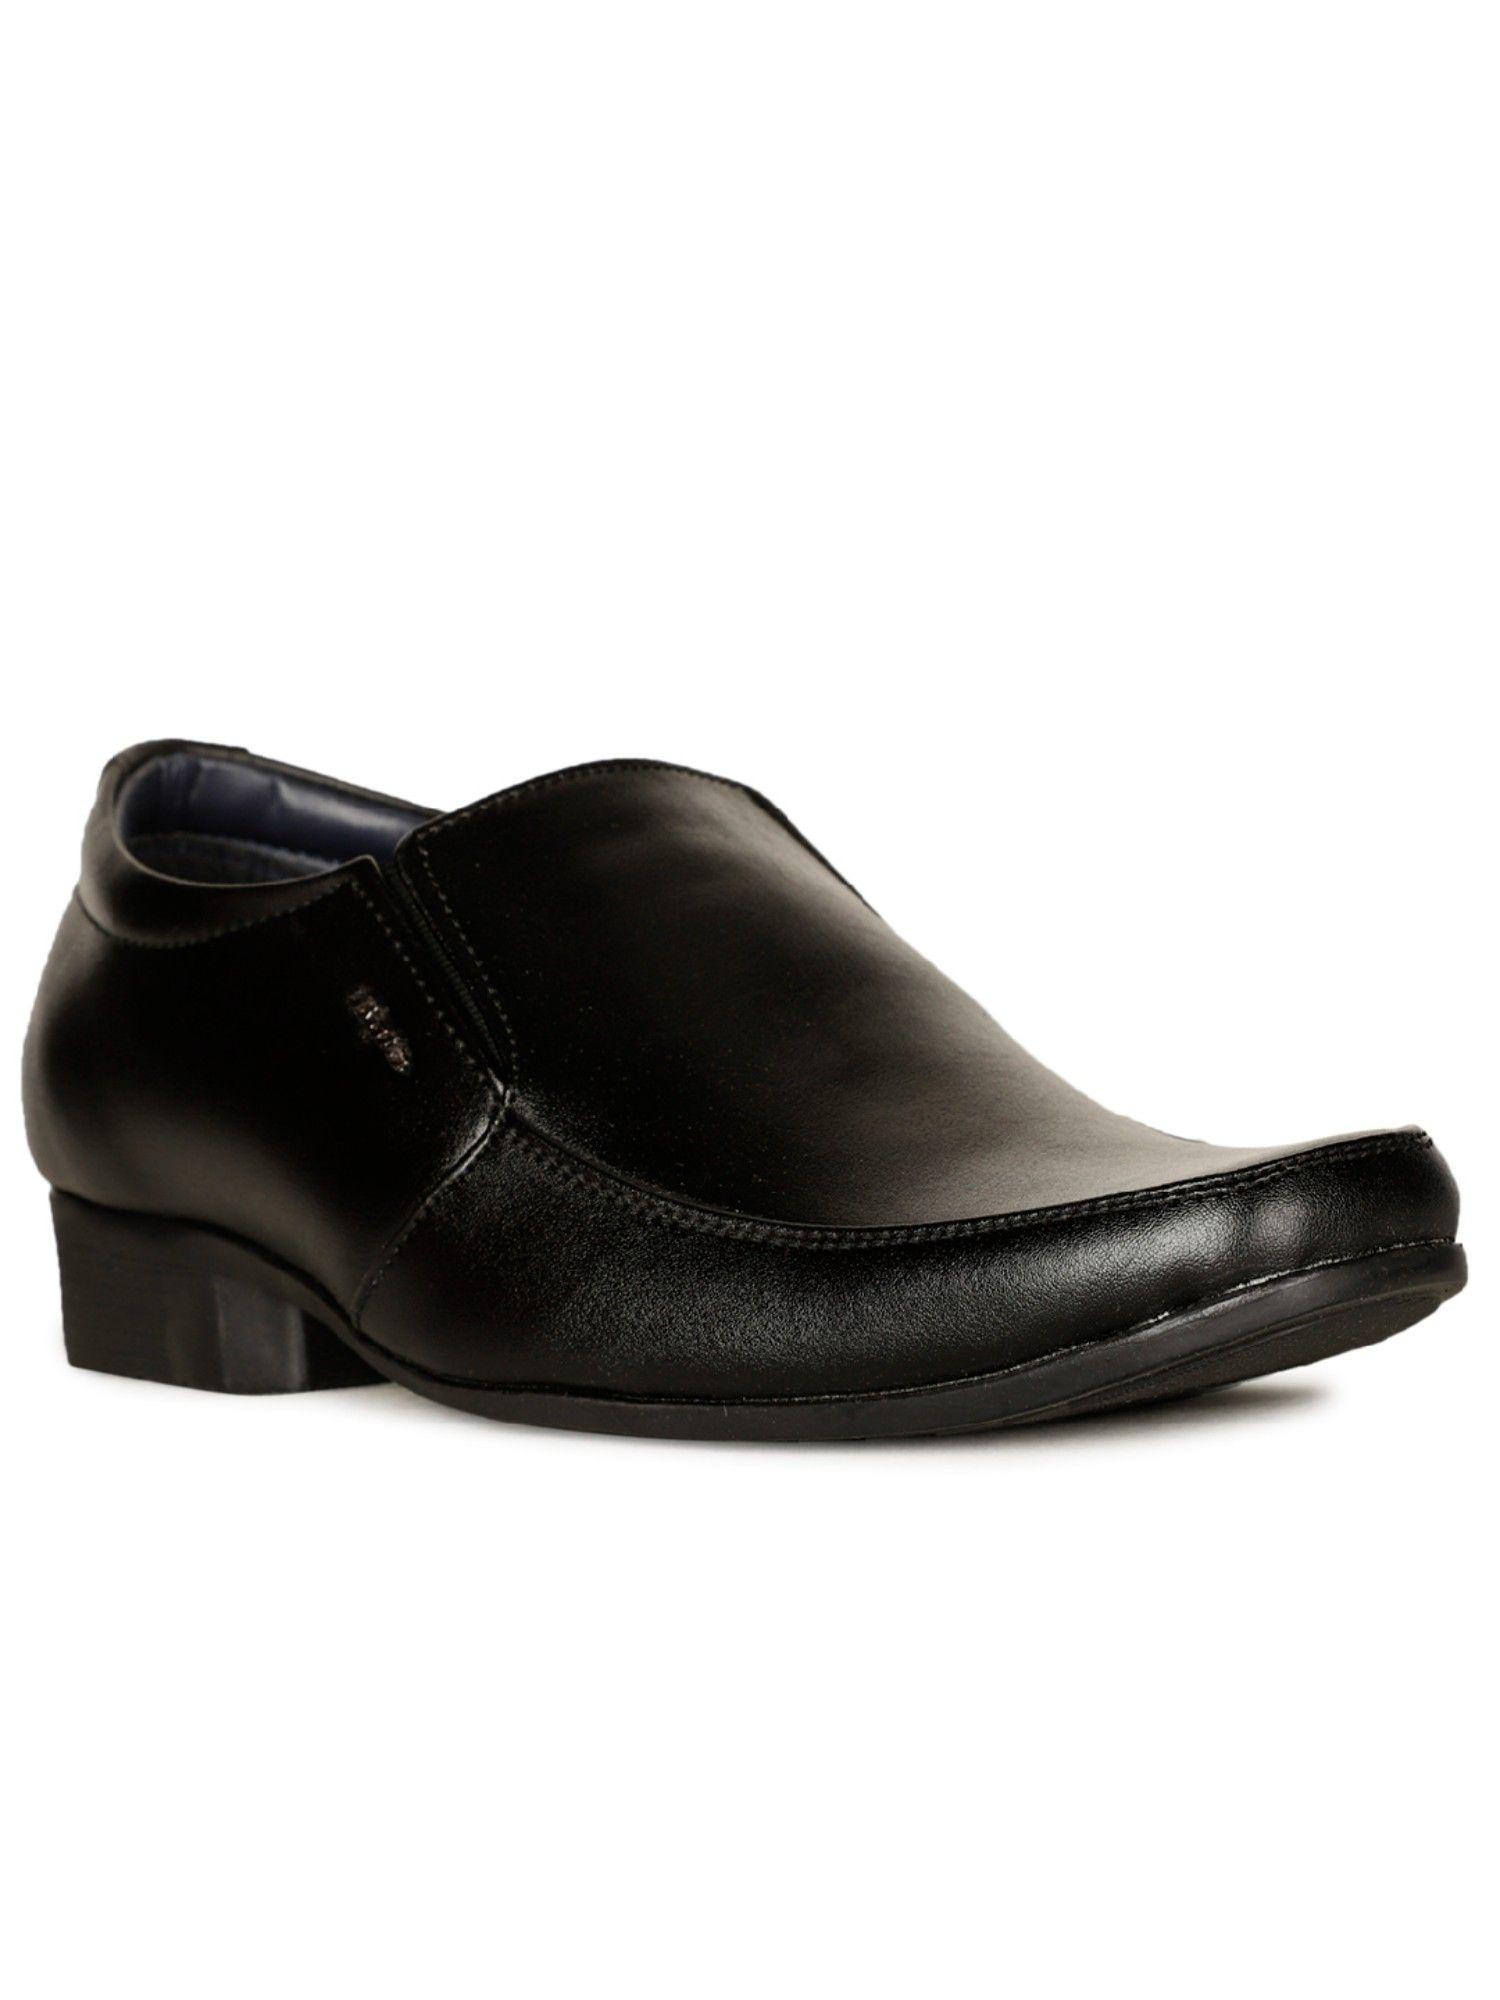 men slip-on formal shoes